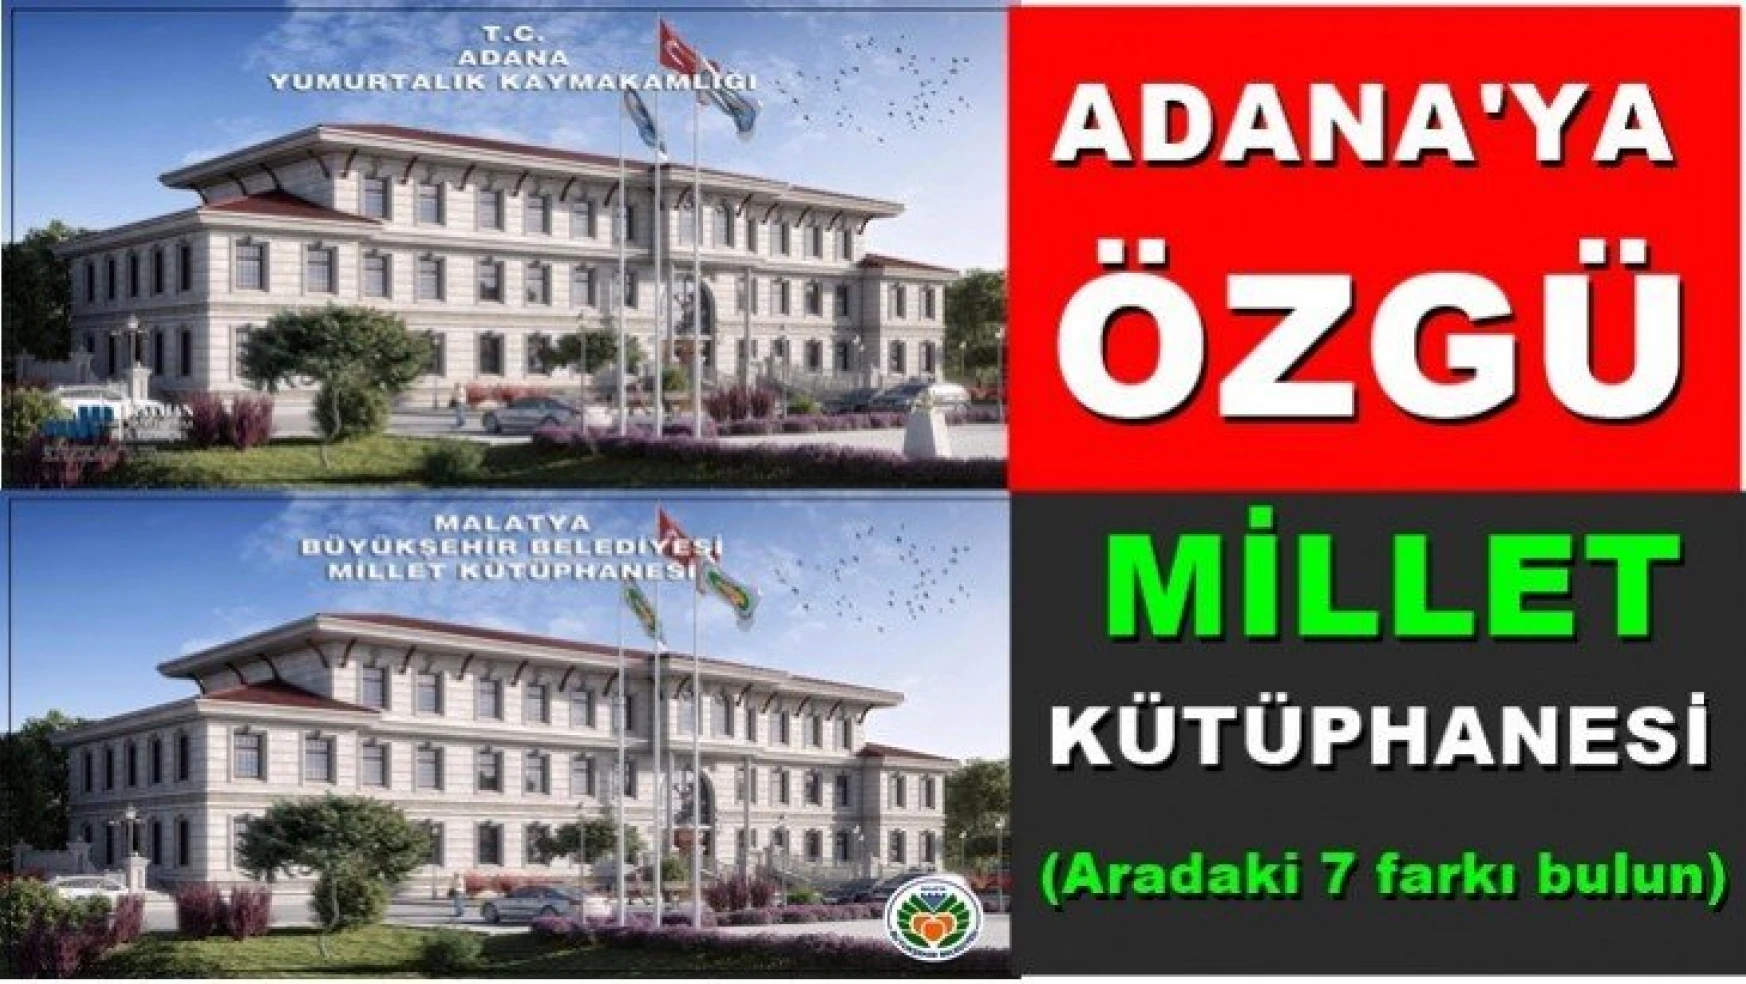 Adana'ya özgü Millet Kütüphanesi!